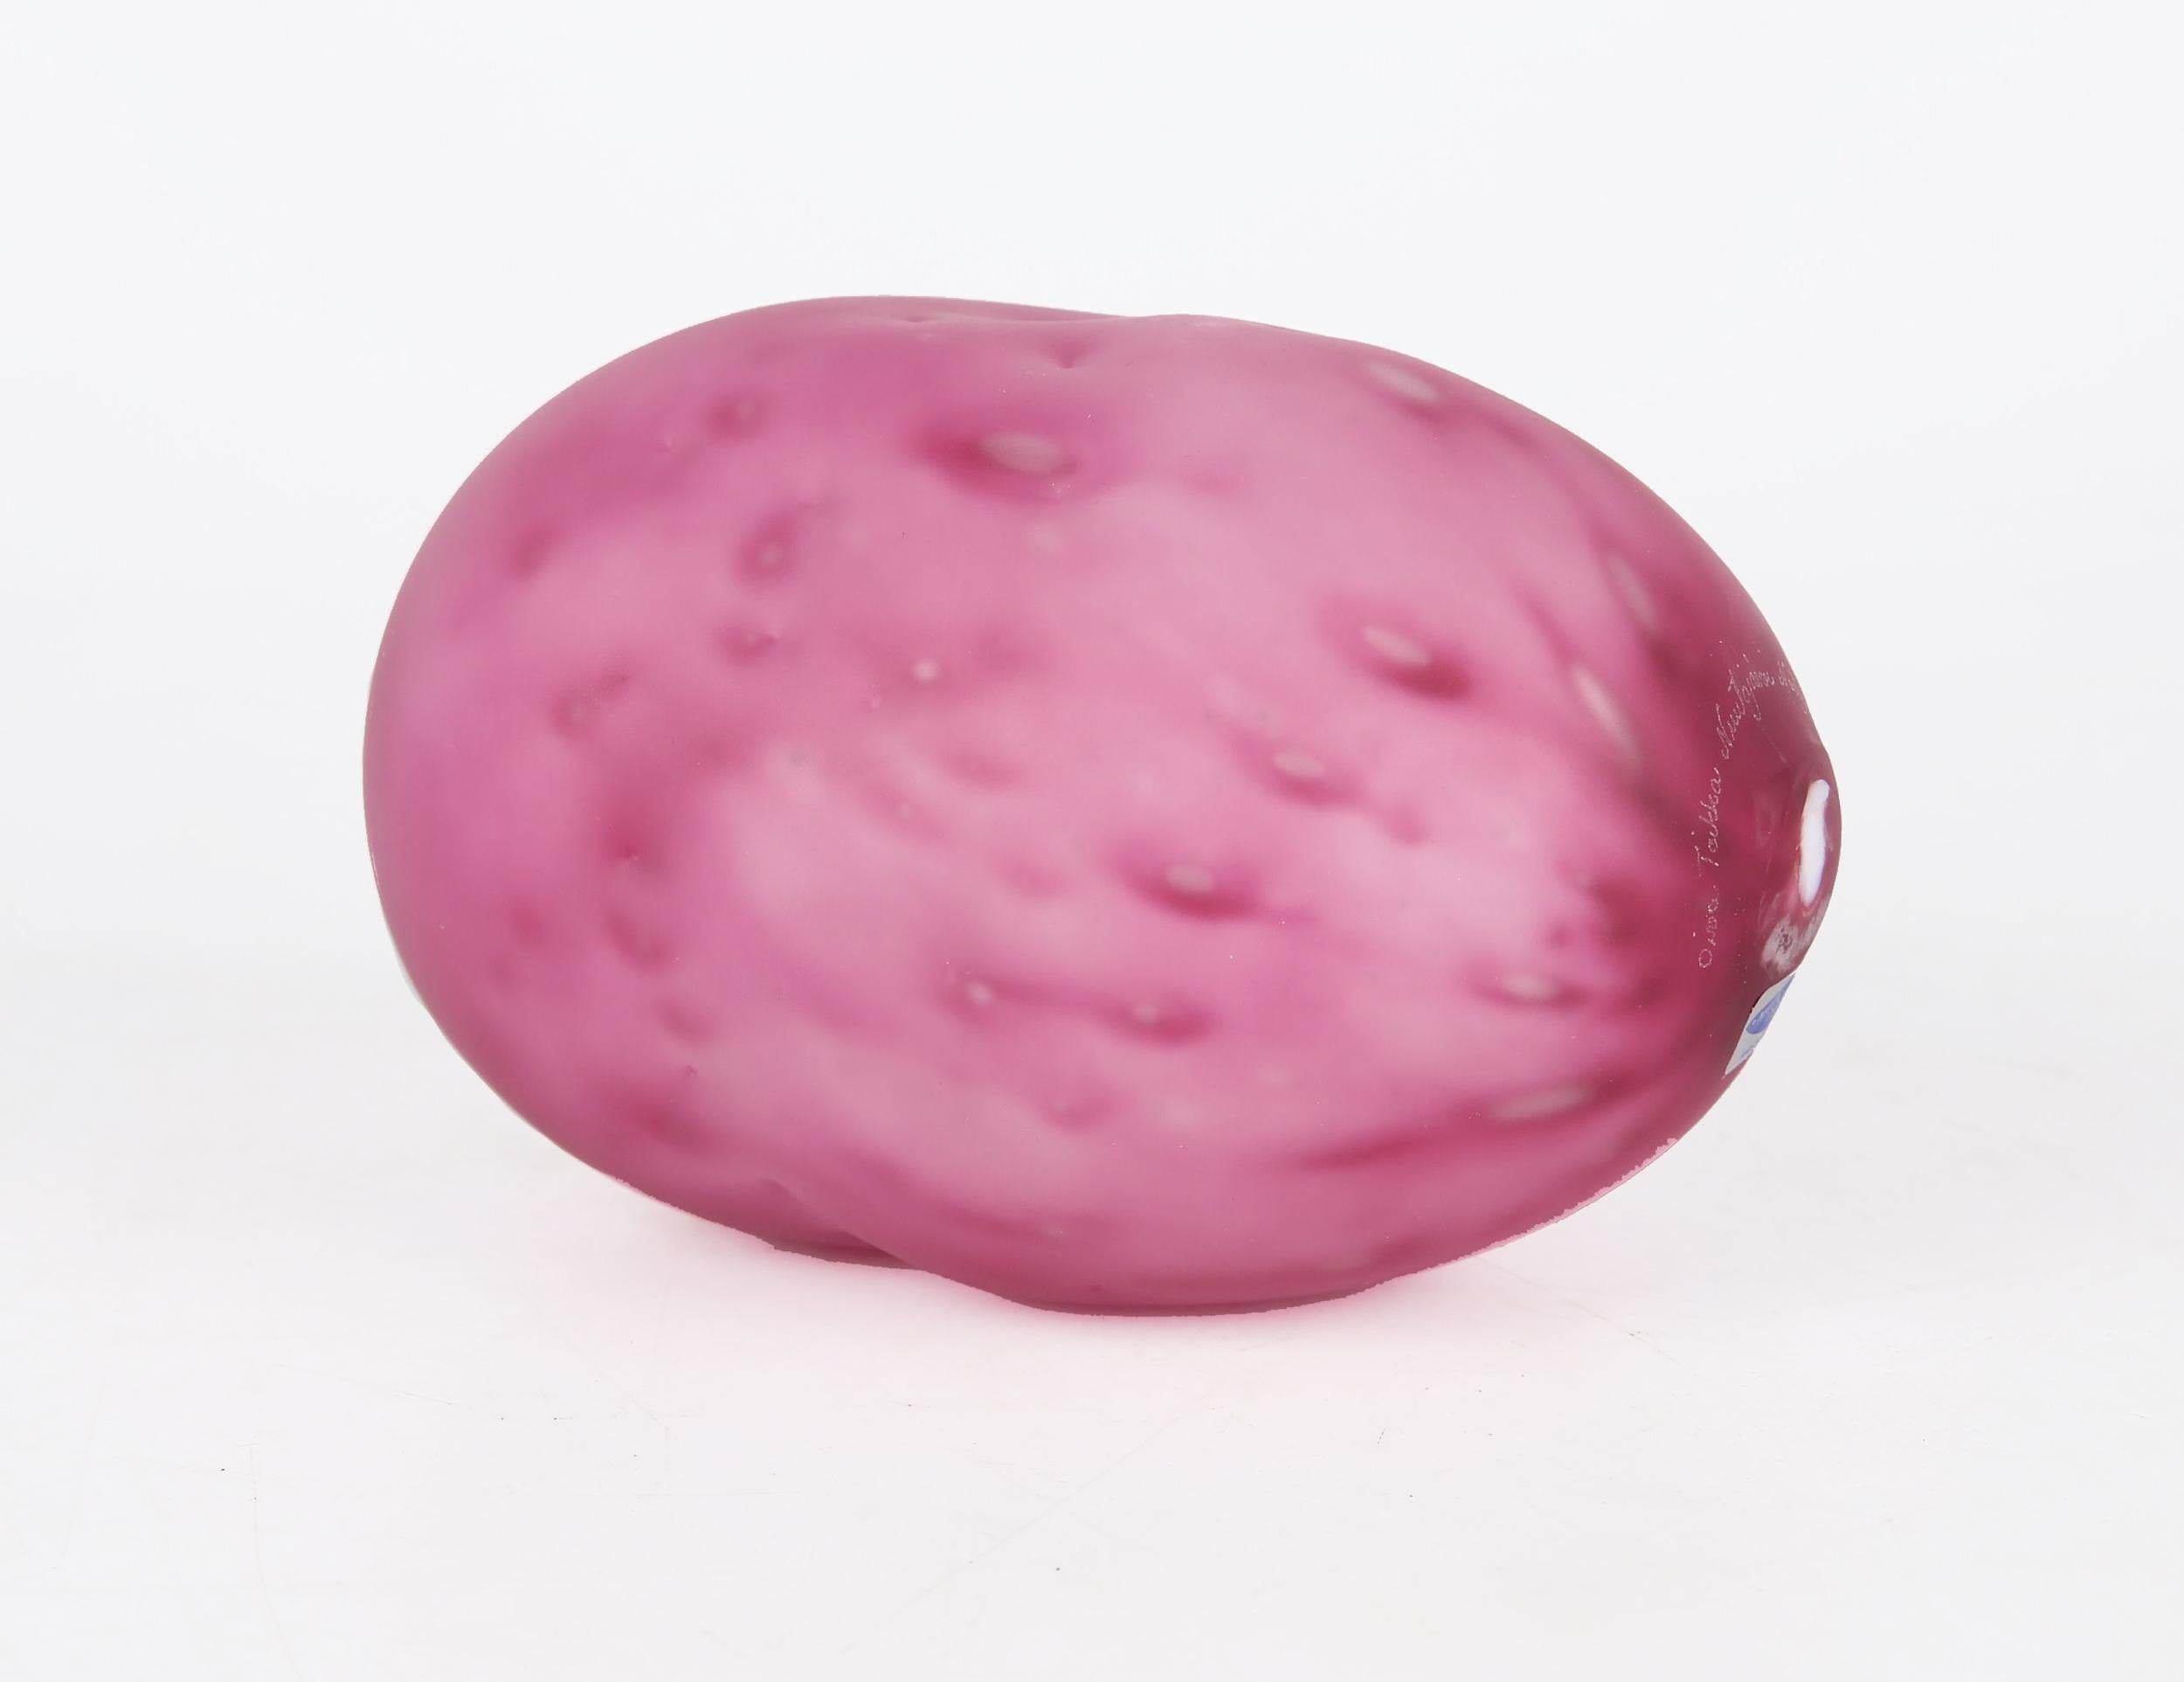 Modern Scandinavian Oiva Toikka, (1931-2019) Artglass, Battatti, (potatoe) Nuutajärvi Notsjõ, Finlande. Aujourd'hui. Qui ne voudrait pas d'une sculpture de pommes de terre en verre rose sur son bureau ? Pensez aux histoires qui pourraient en